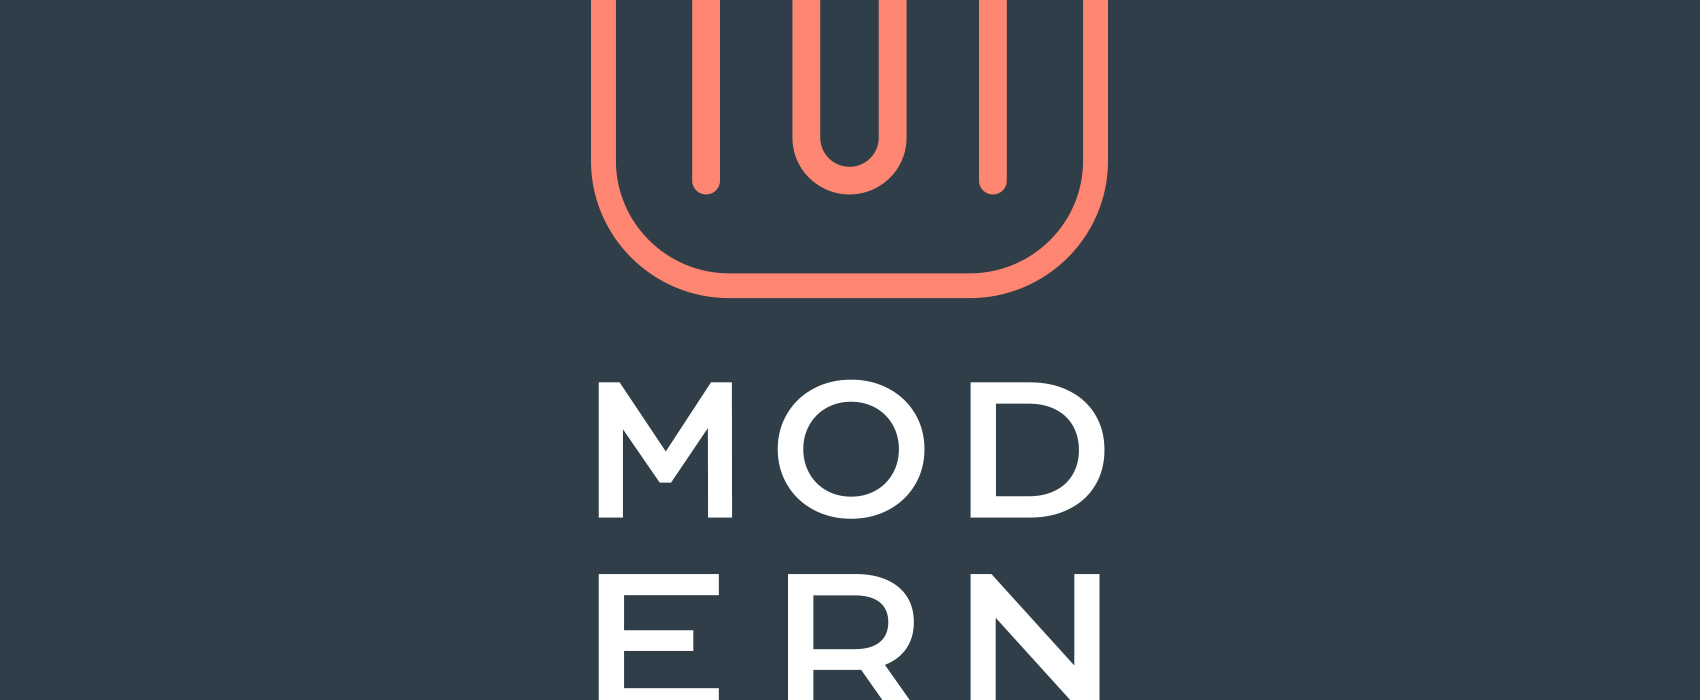 Modern menu